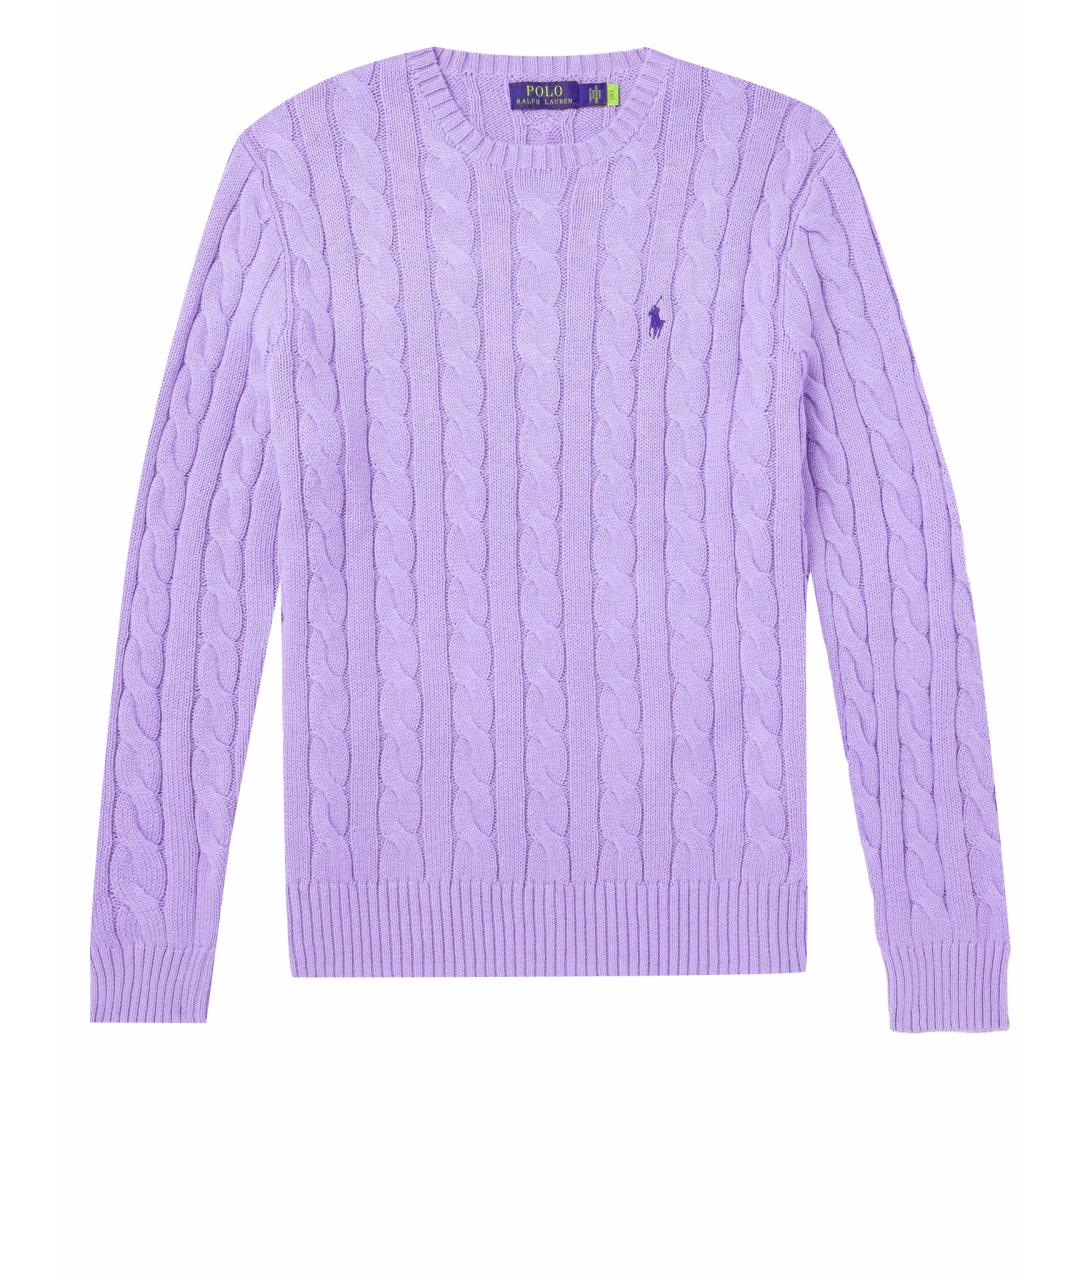 POLO RALPH LAUREN Фиолетовый хлопковый джемпер / свитер, фото 1